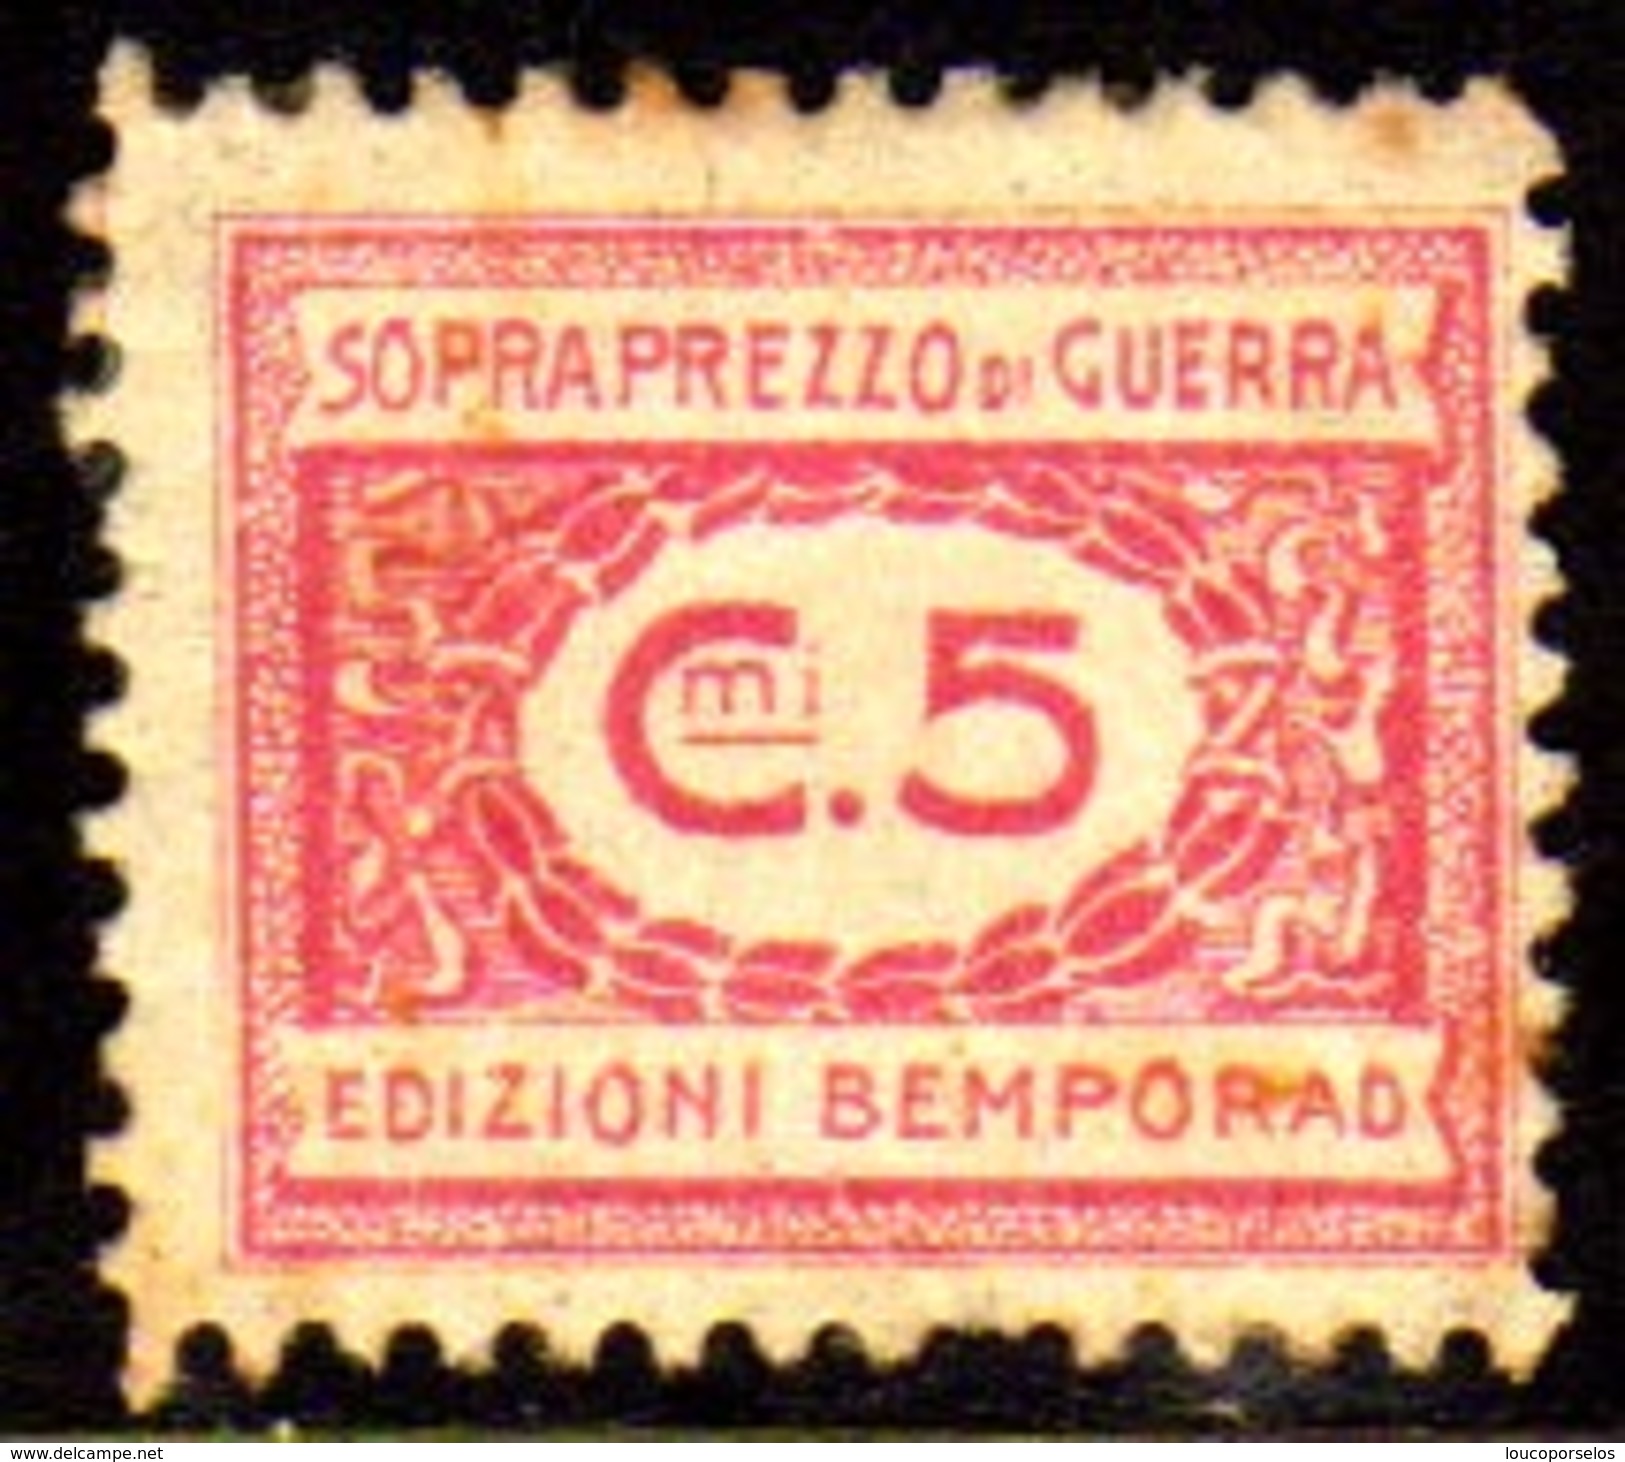 10535 Italia Selos De Sobrepreço De Guerra 5 Cts N (a) - Fiscales